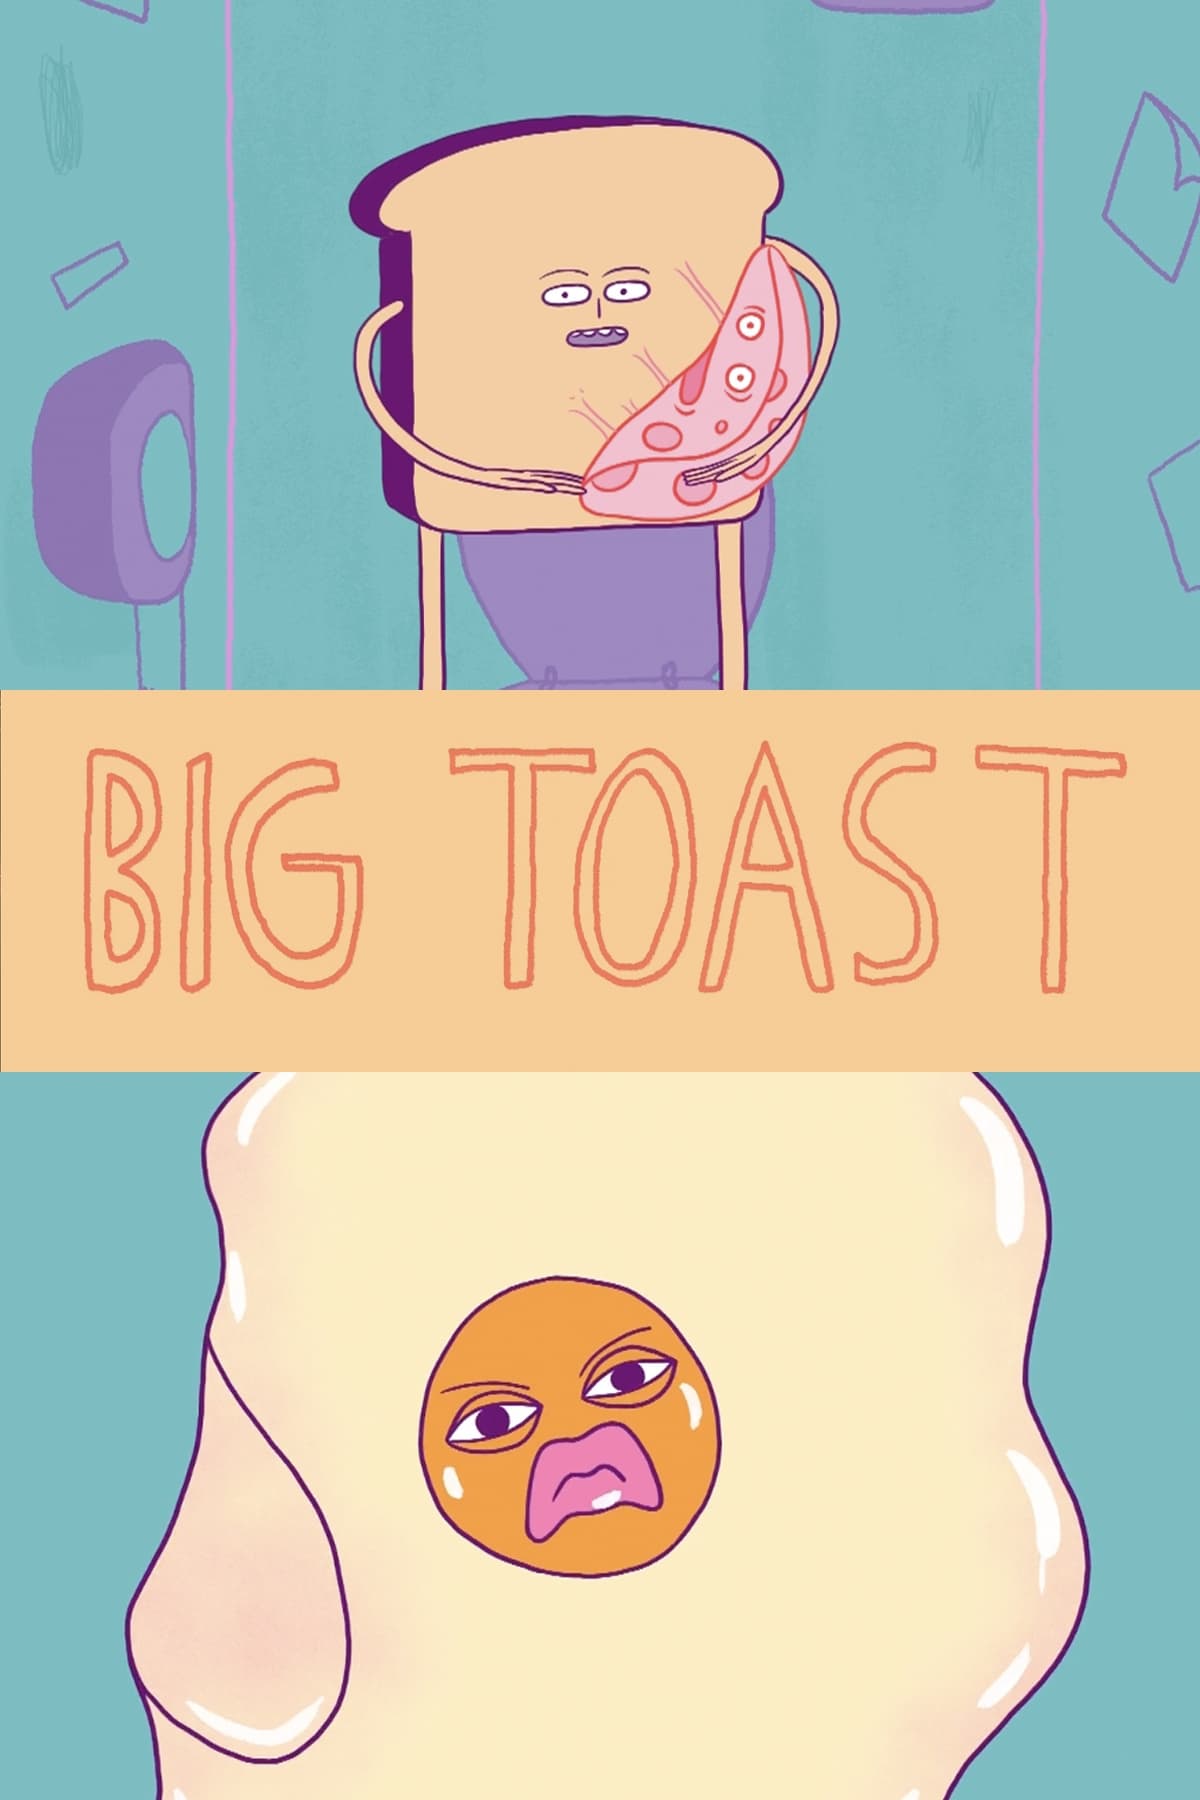 Big Toast